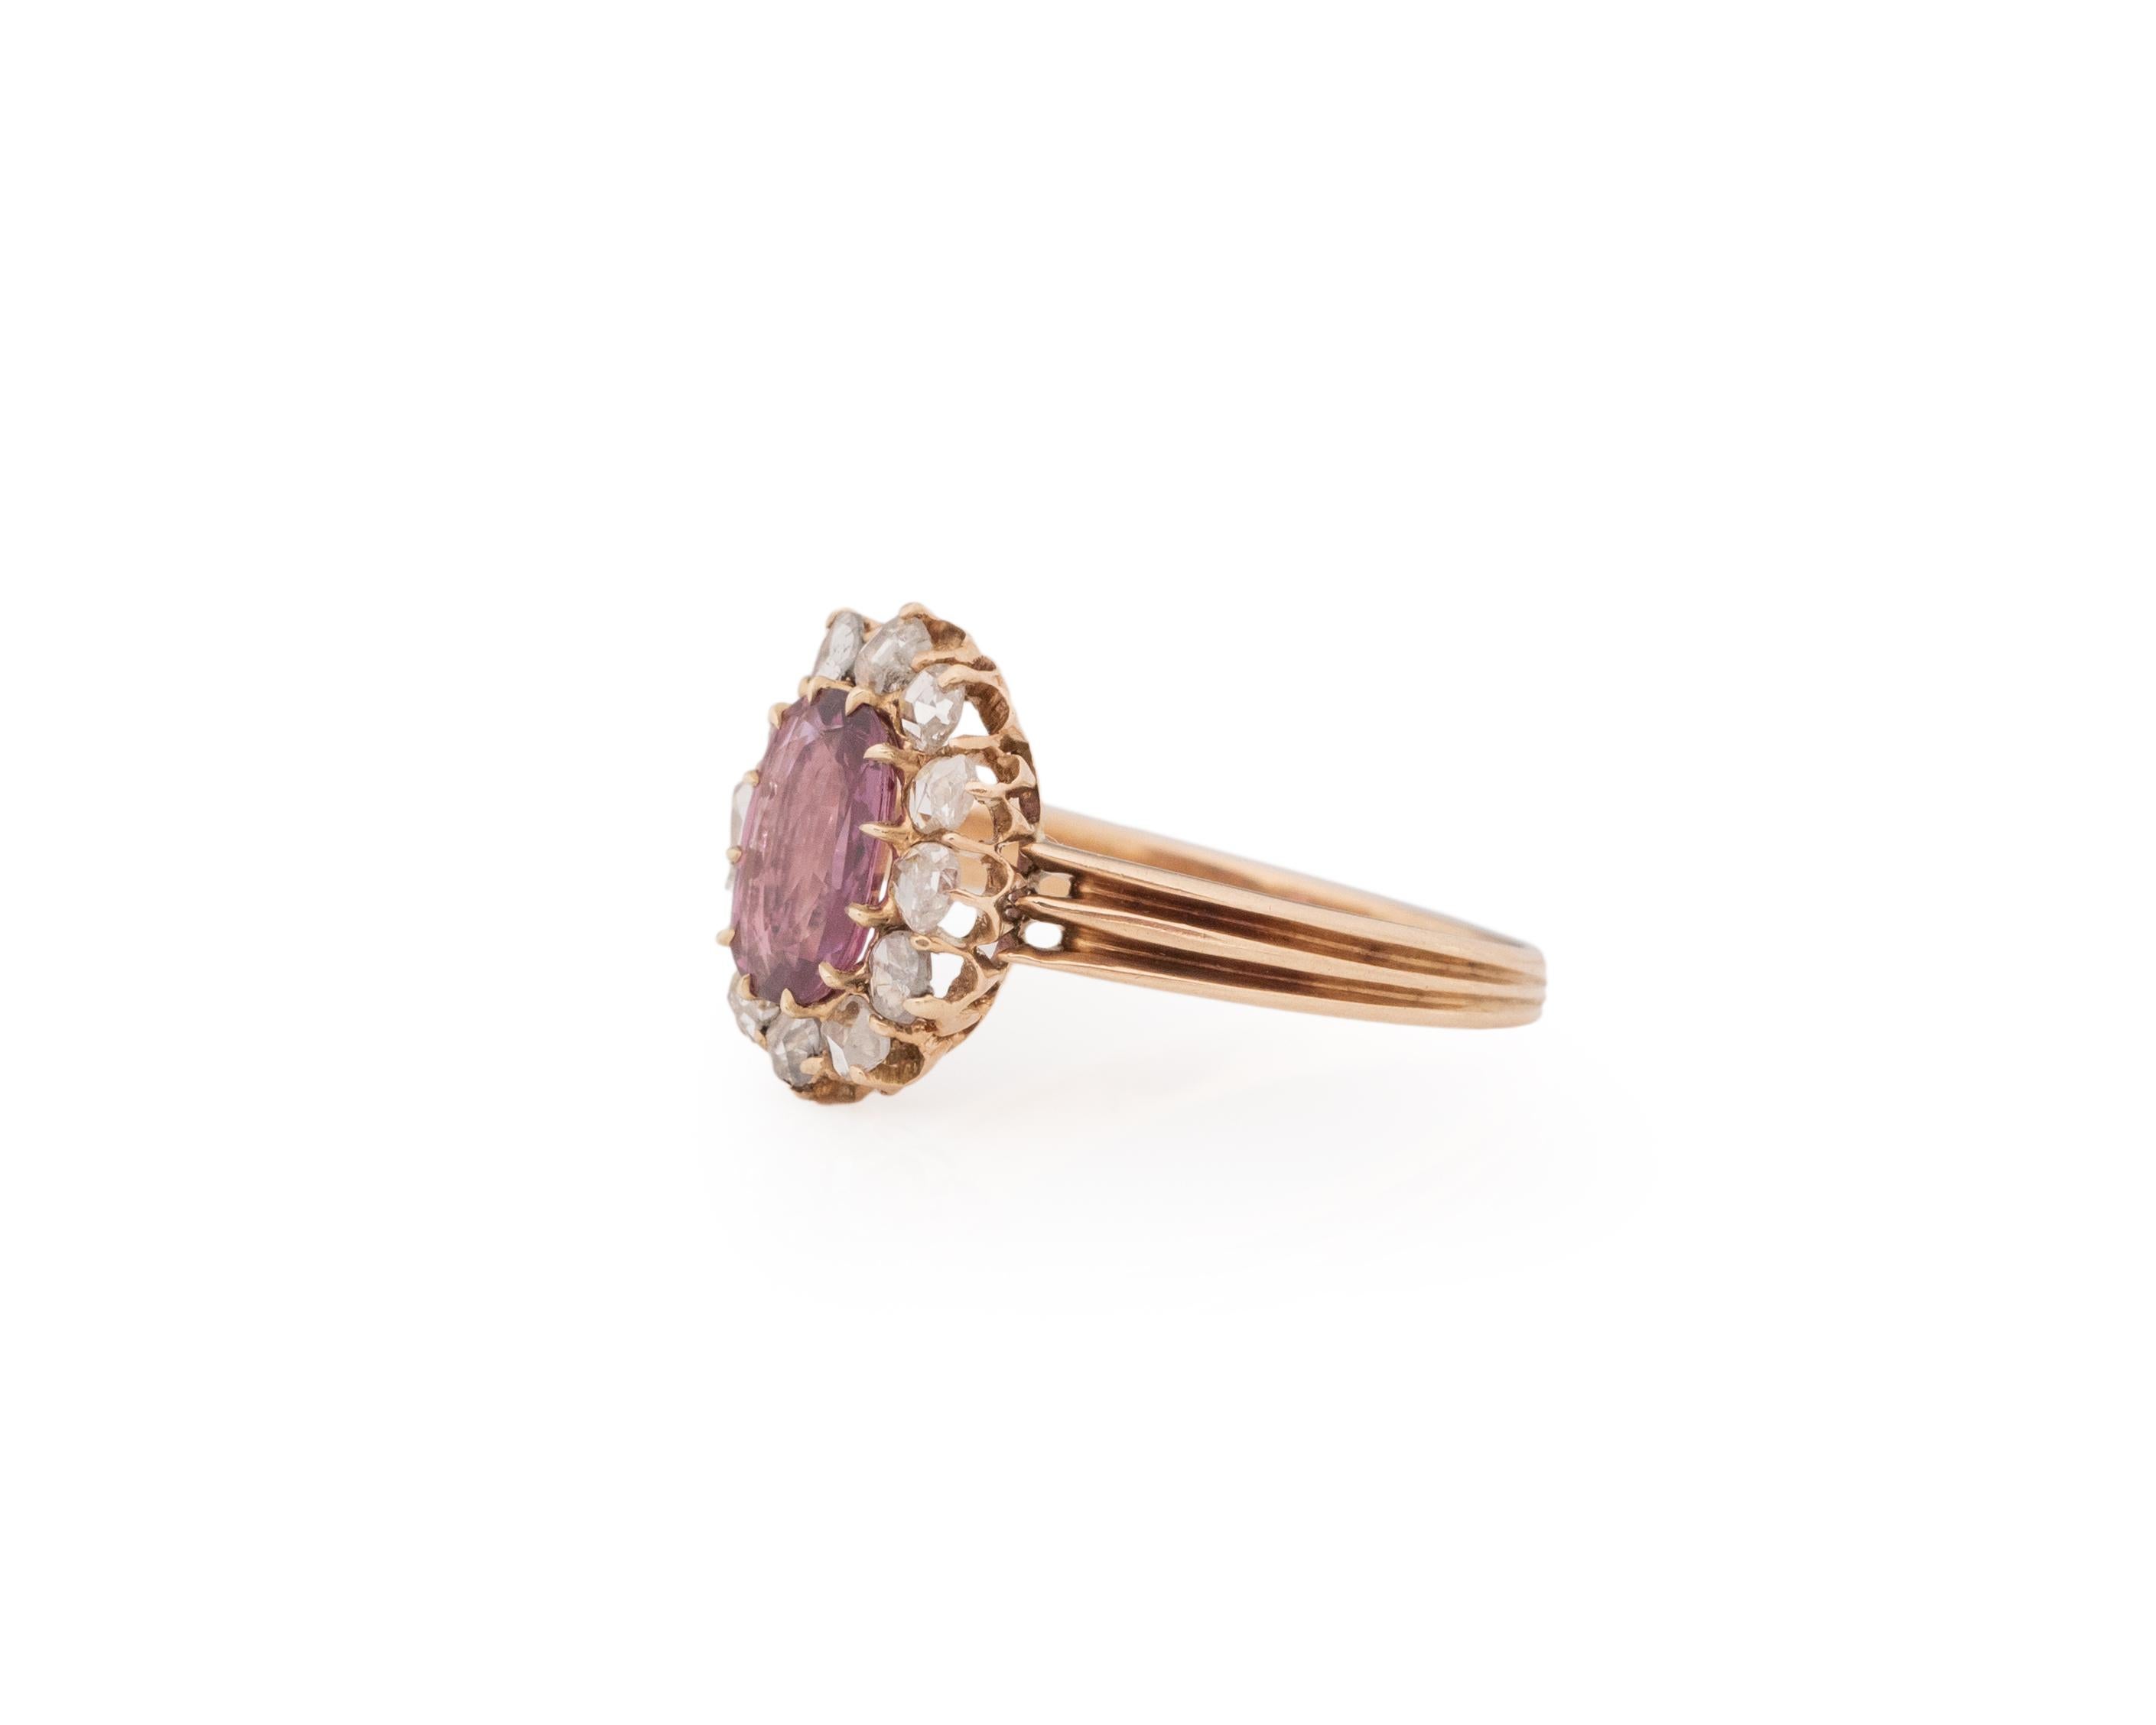 Rose Cut Gia Certified 1.36 Carat Edwardian Diamond 14 Karat Rose Gold Engagement Ring For Sale